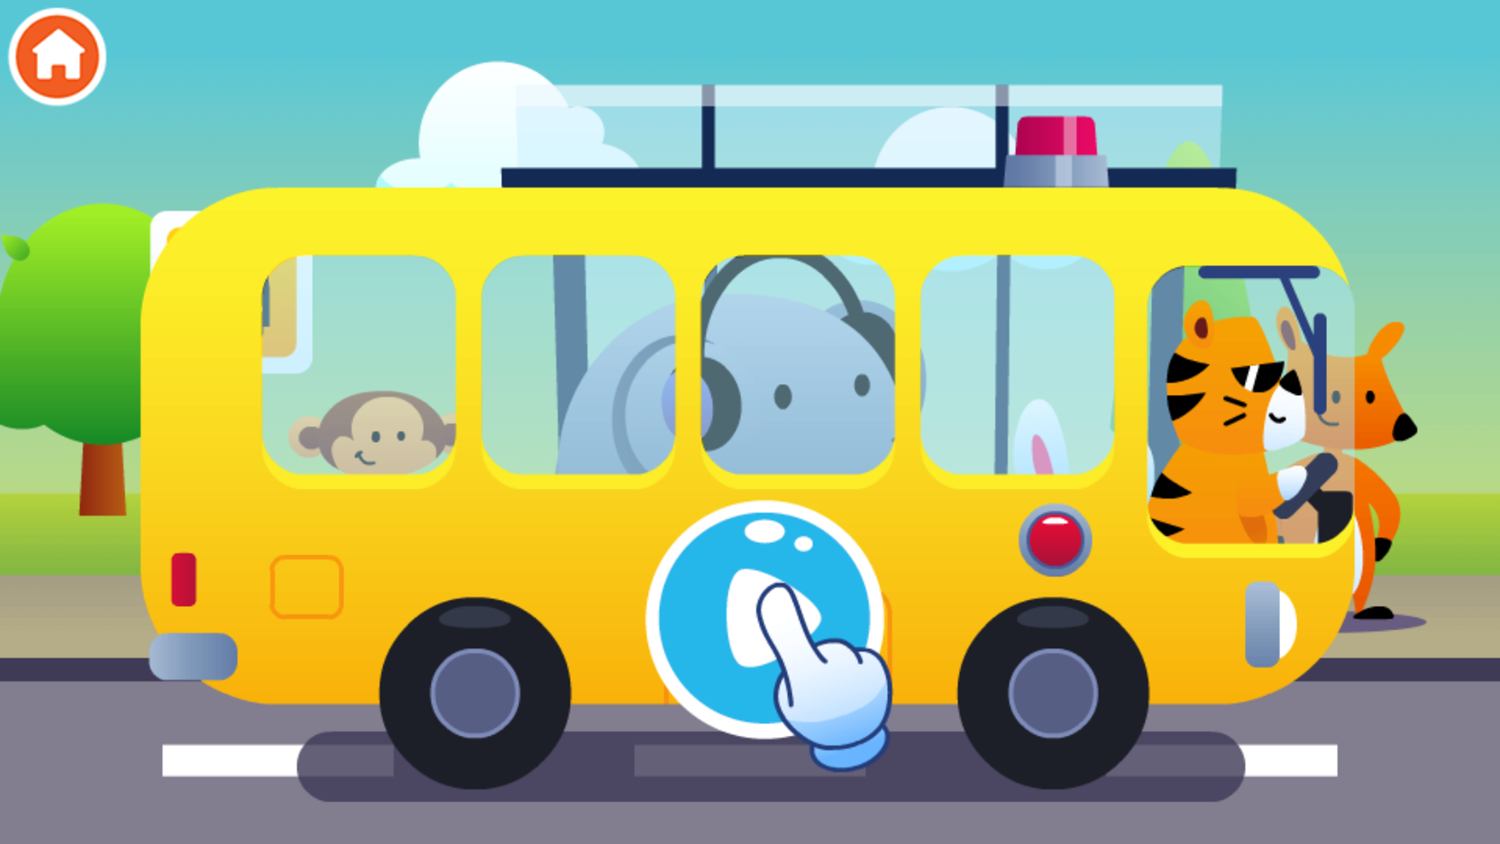 Wheels on the Bus Sing Along Game Start Screenshot.